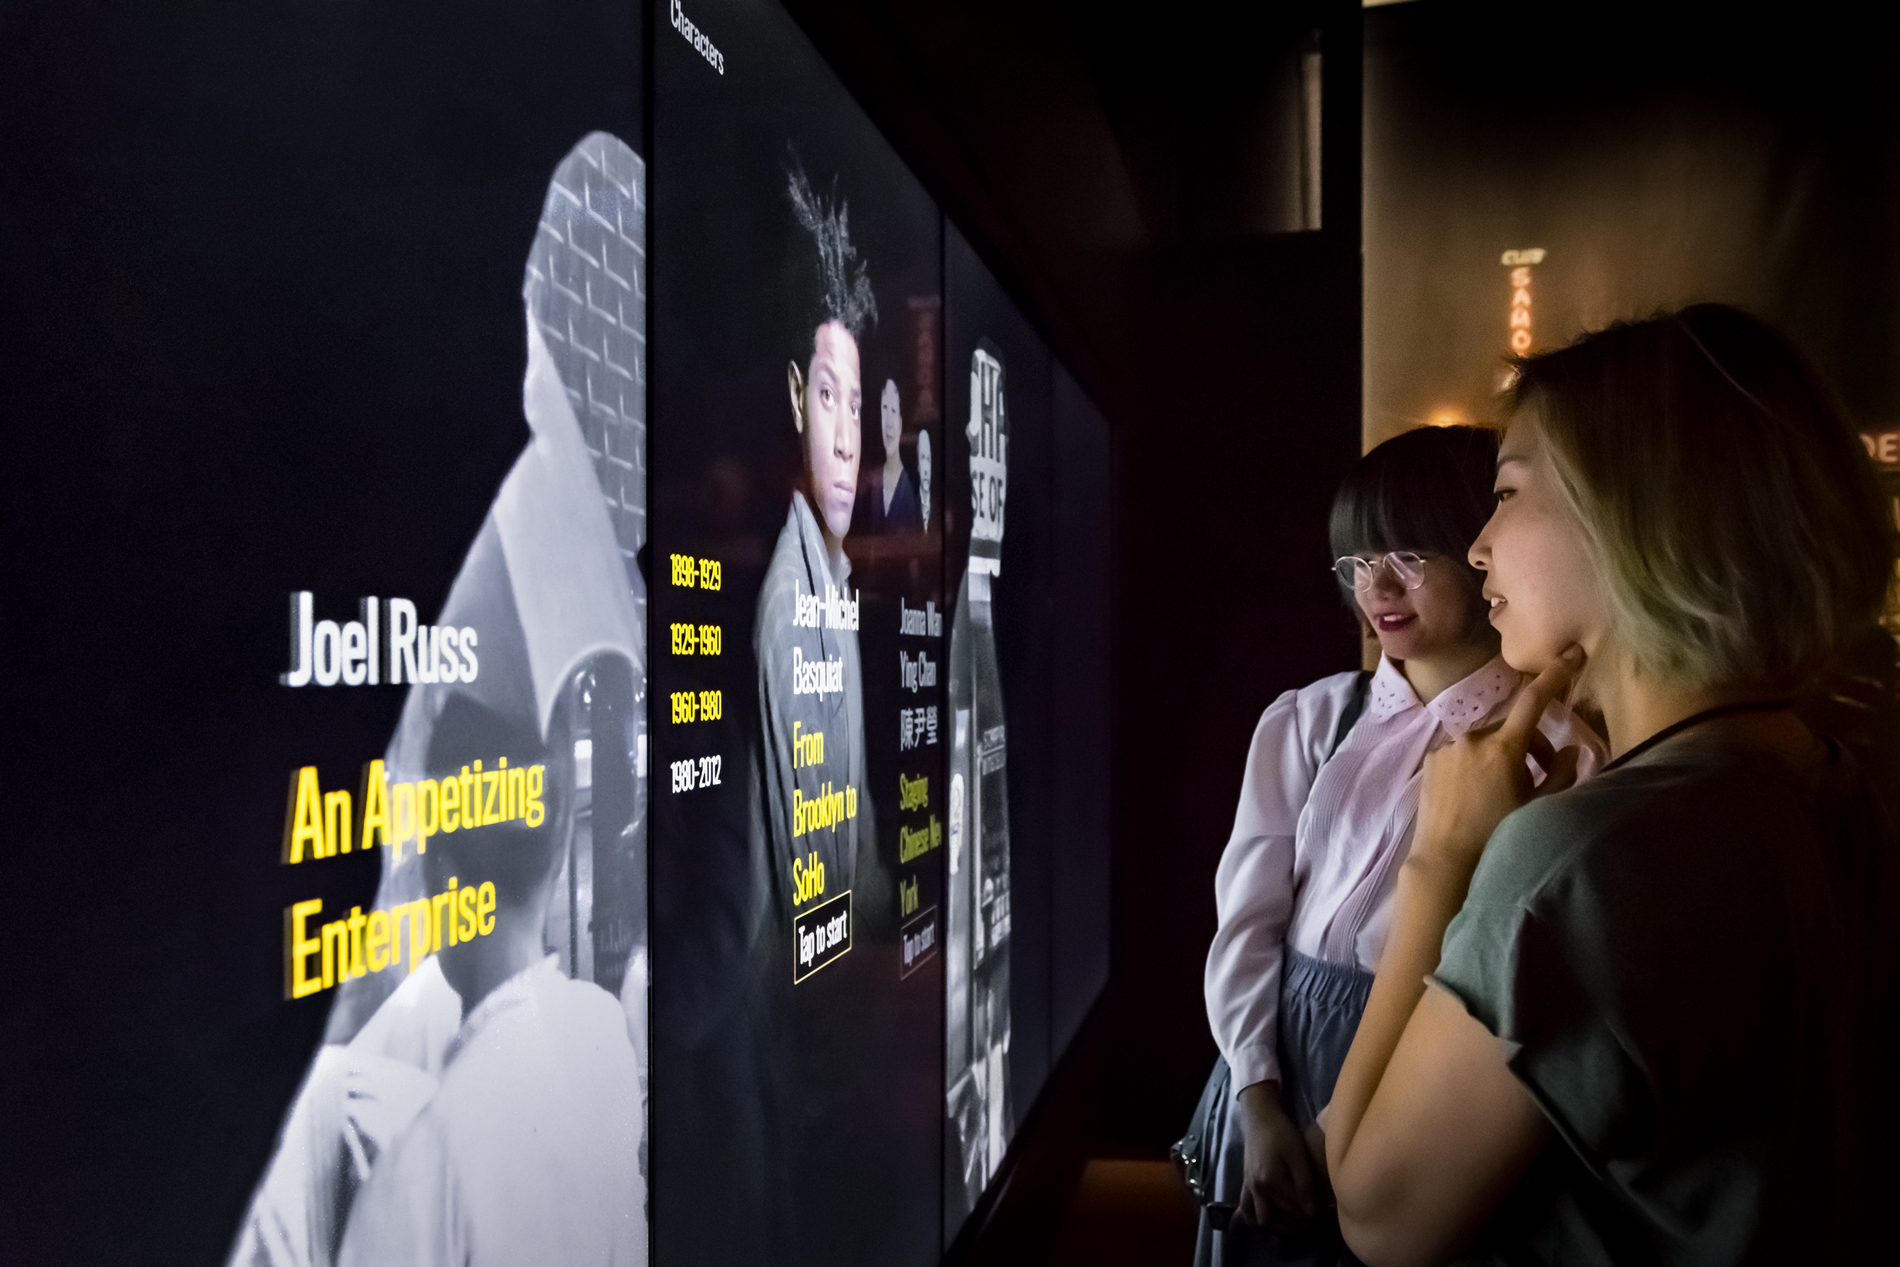 两名访客查看画廊中显示的交互式屏幕